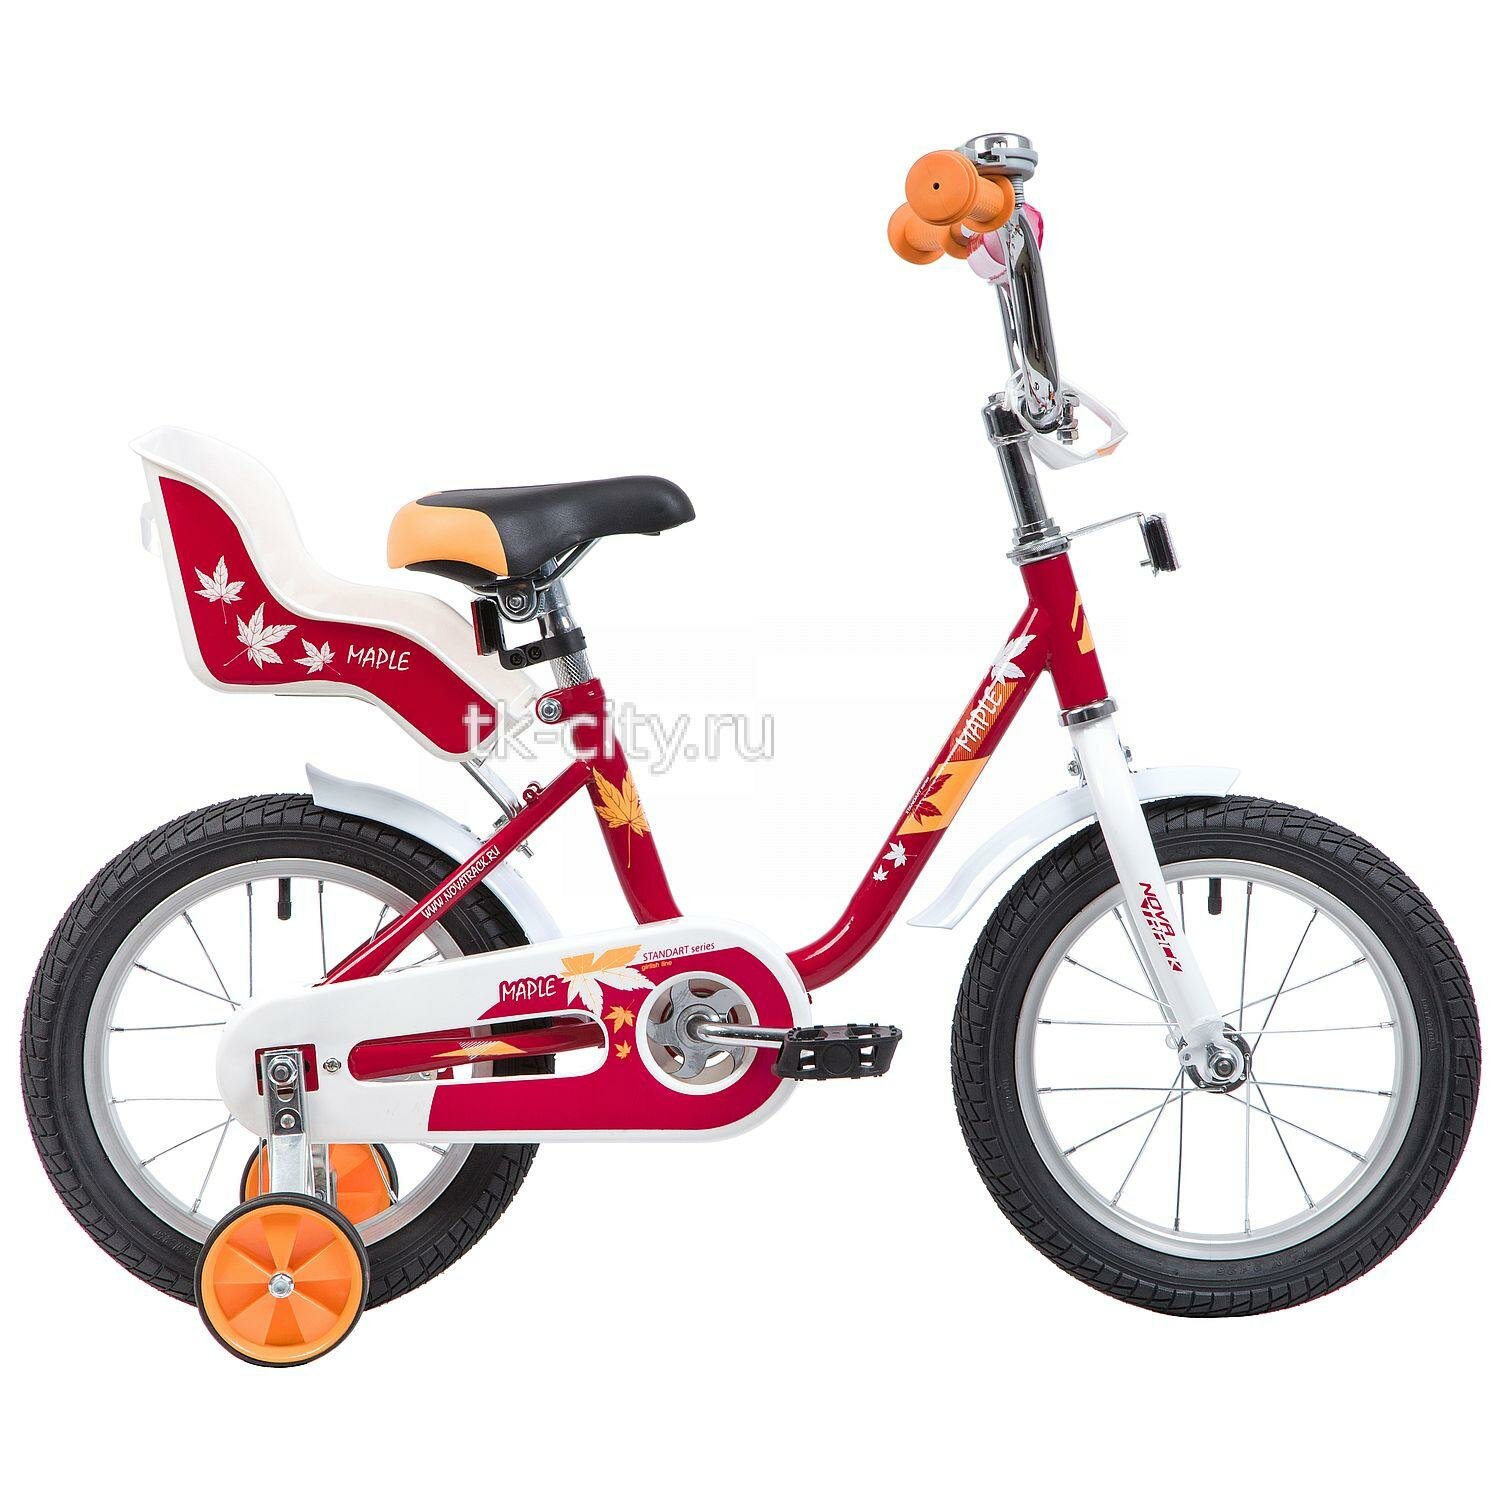 Детский велосипед Novatrack Maple 14 (2019) Красный